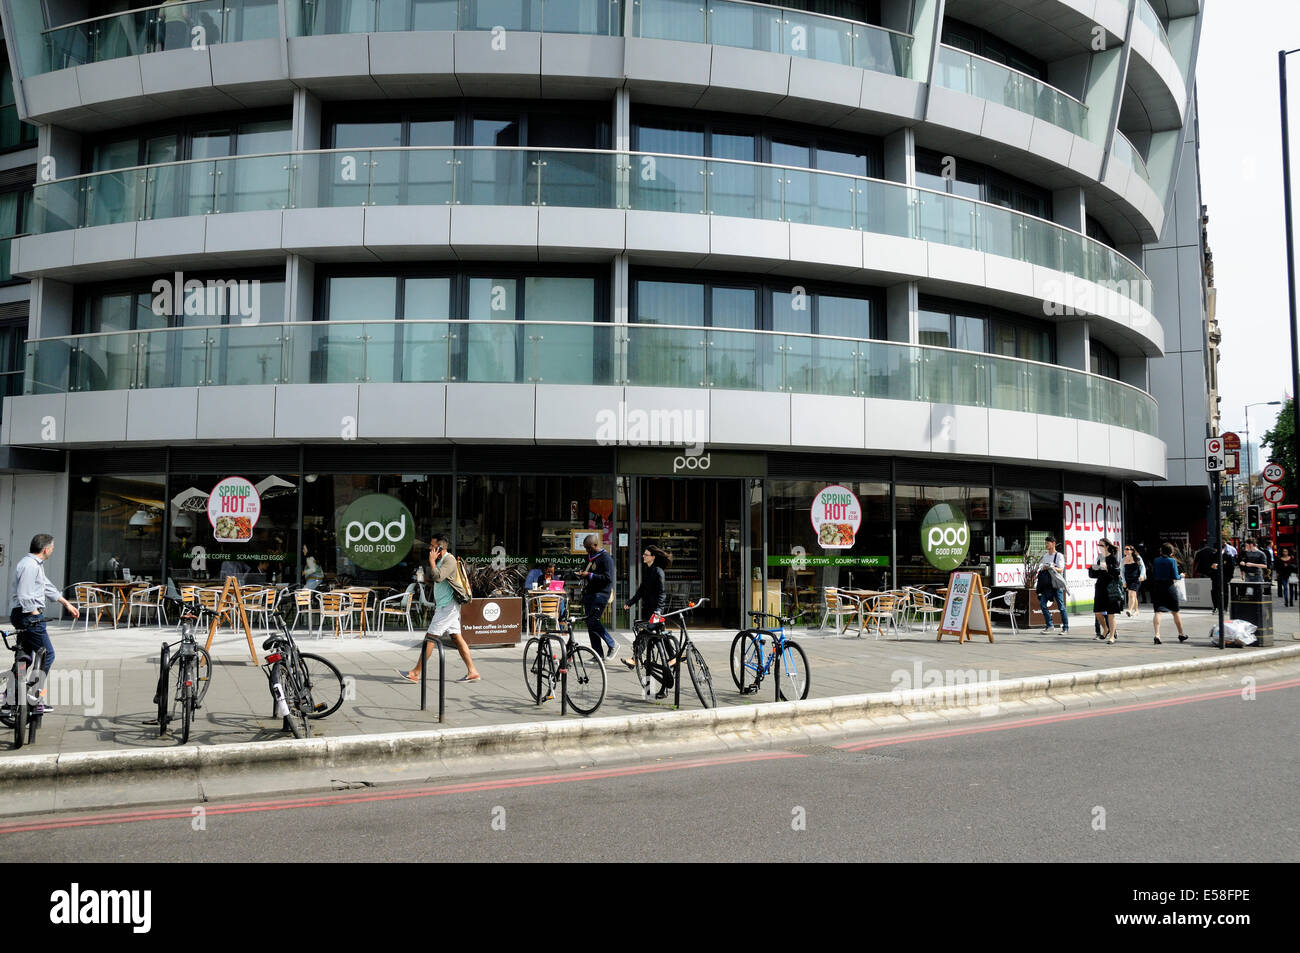 Pod bonne nourriture avec les personnes de passage et des supports à vélos à l'extérieur, Old Street, London England Angleterre UK Banque D'Images